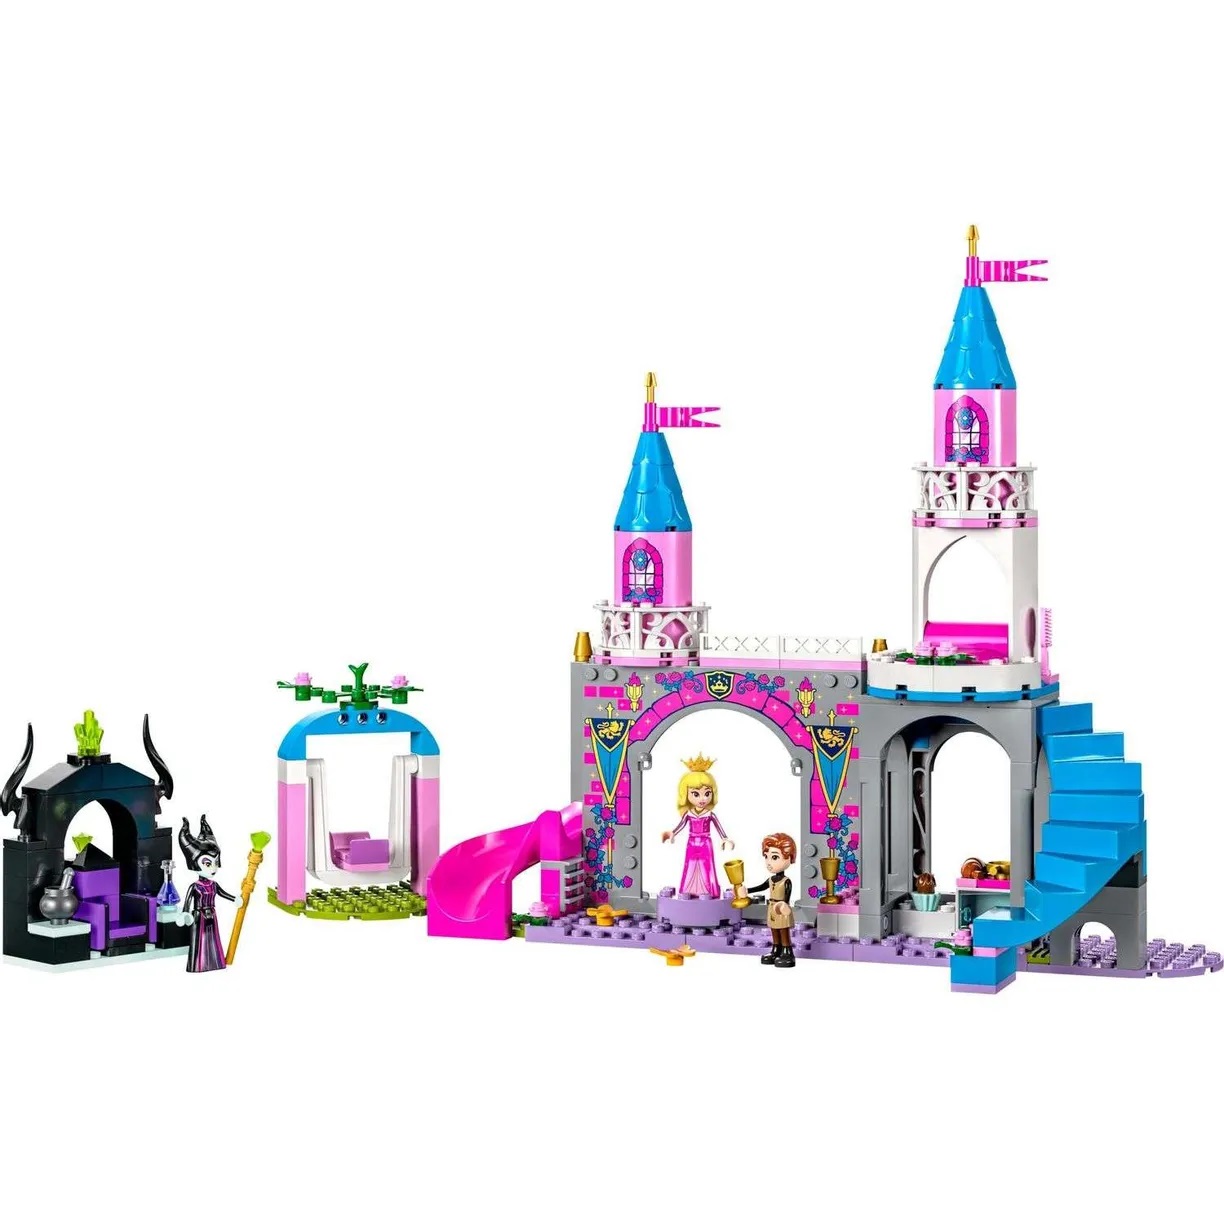 Lego Disney Princess 43211 Замок Авроры